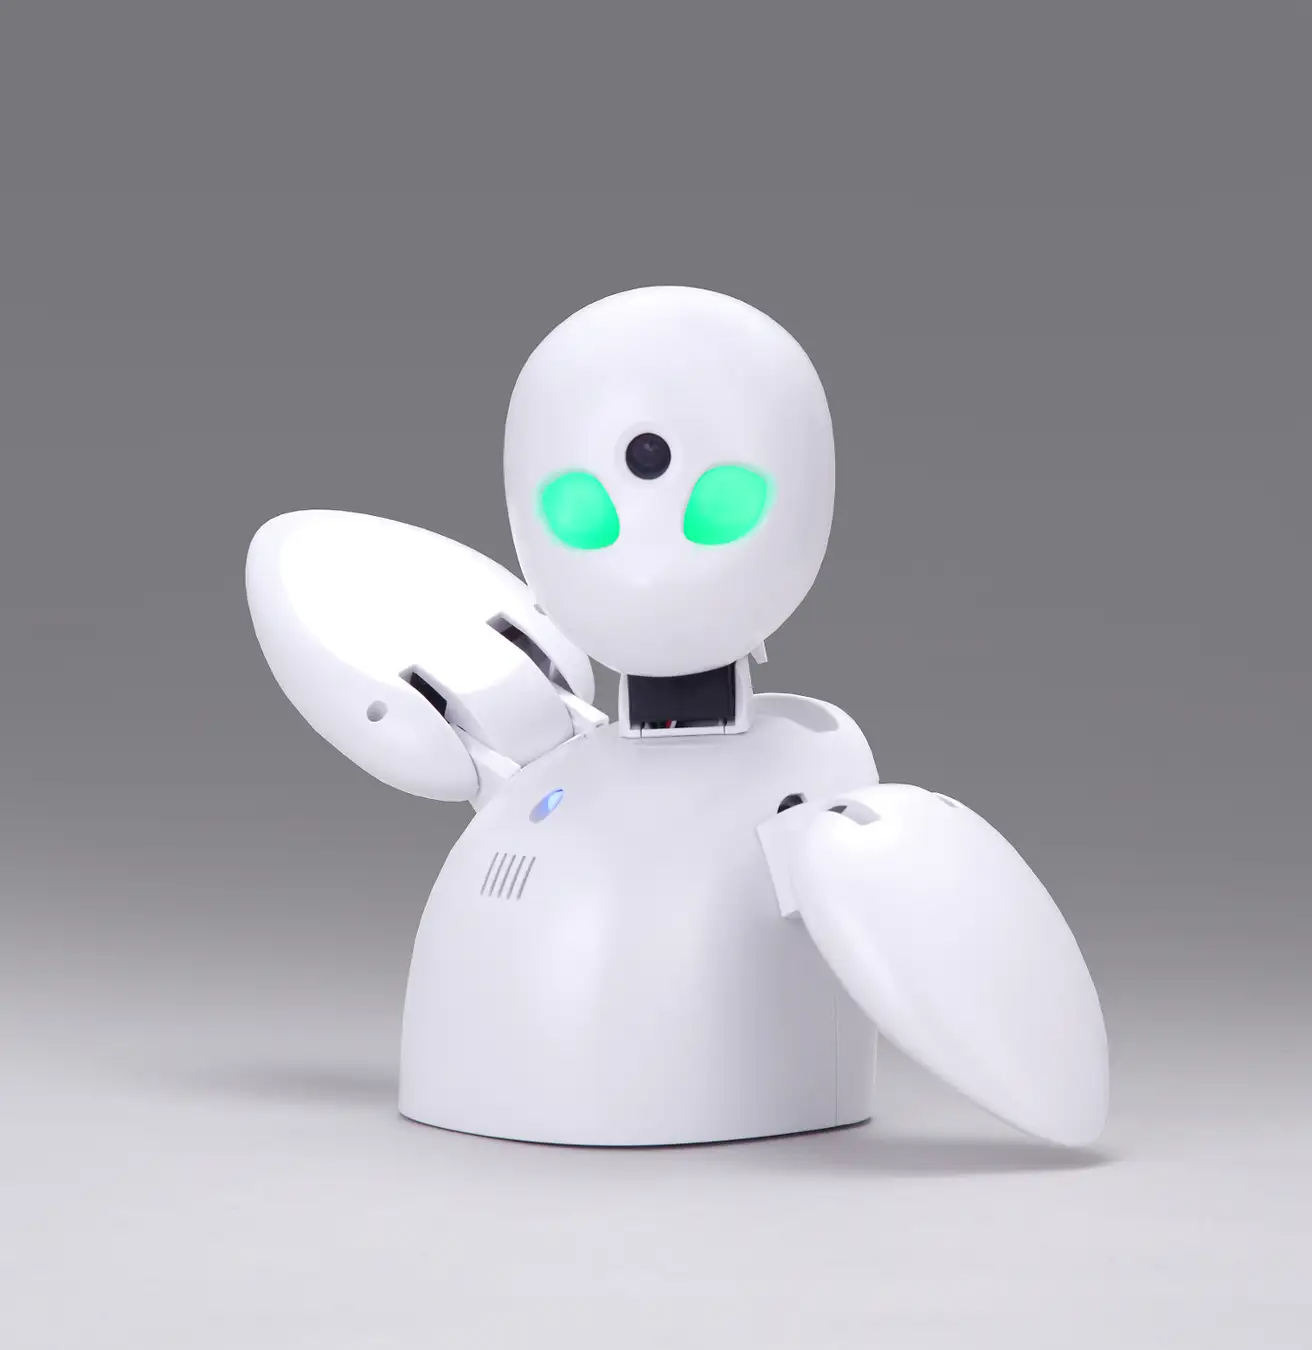 モスバーガー原宿表参道店に分身テレワーク・ロボット「OriHime」を導入─持続可能な社会づくりへの取り組みを発信